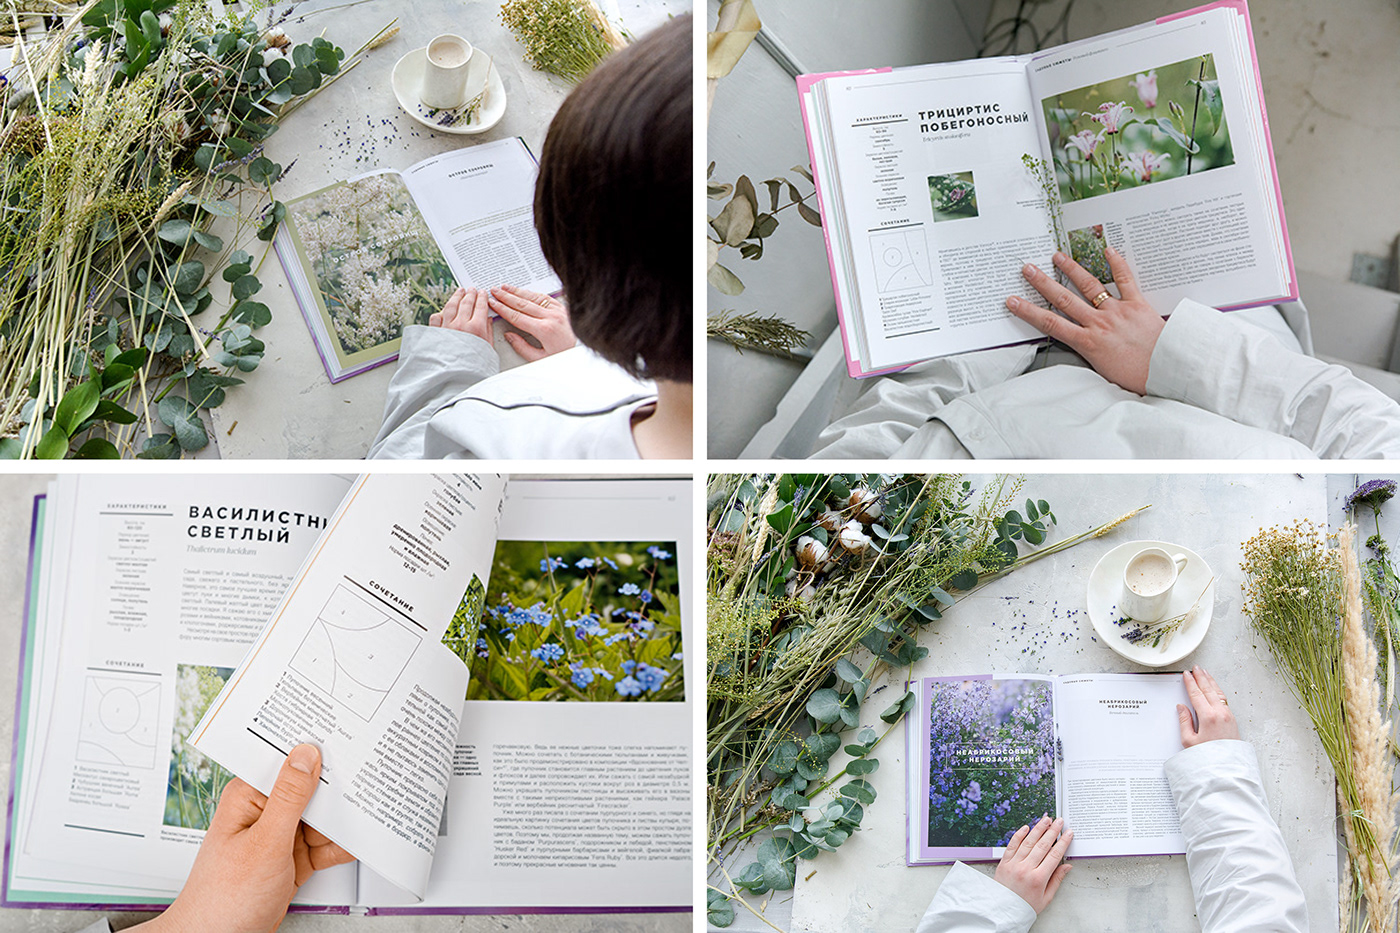 book design Flowers garden Layout photo plants